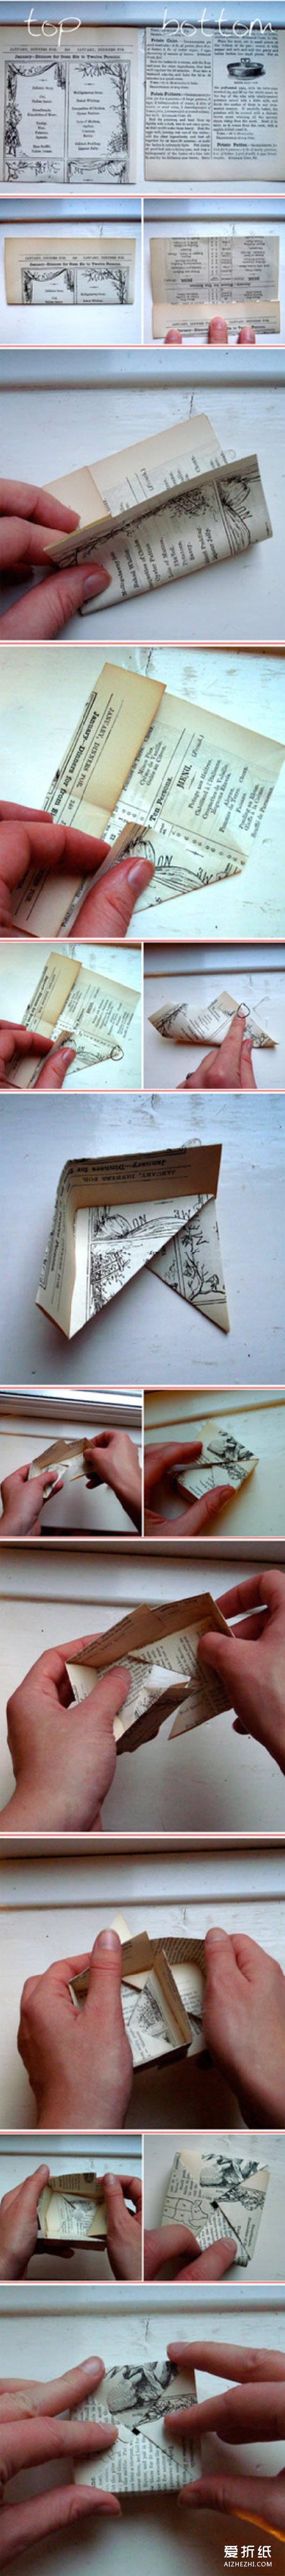 如何用废纸折纸盒子 废纸折纸盒的方法图解- www.aizhezhi.com